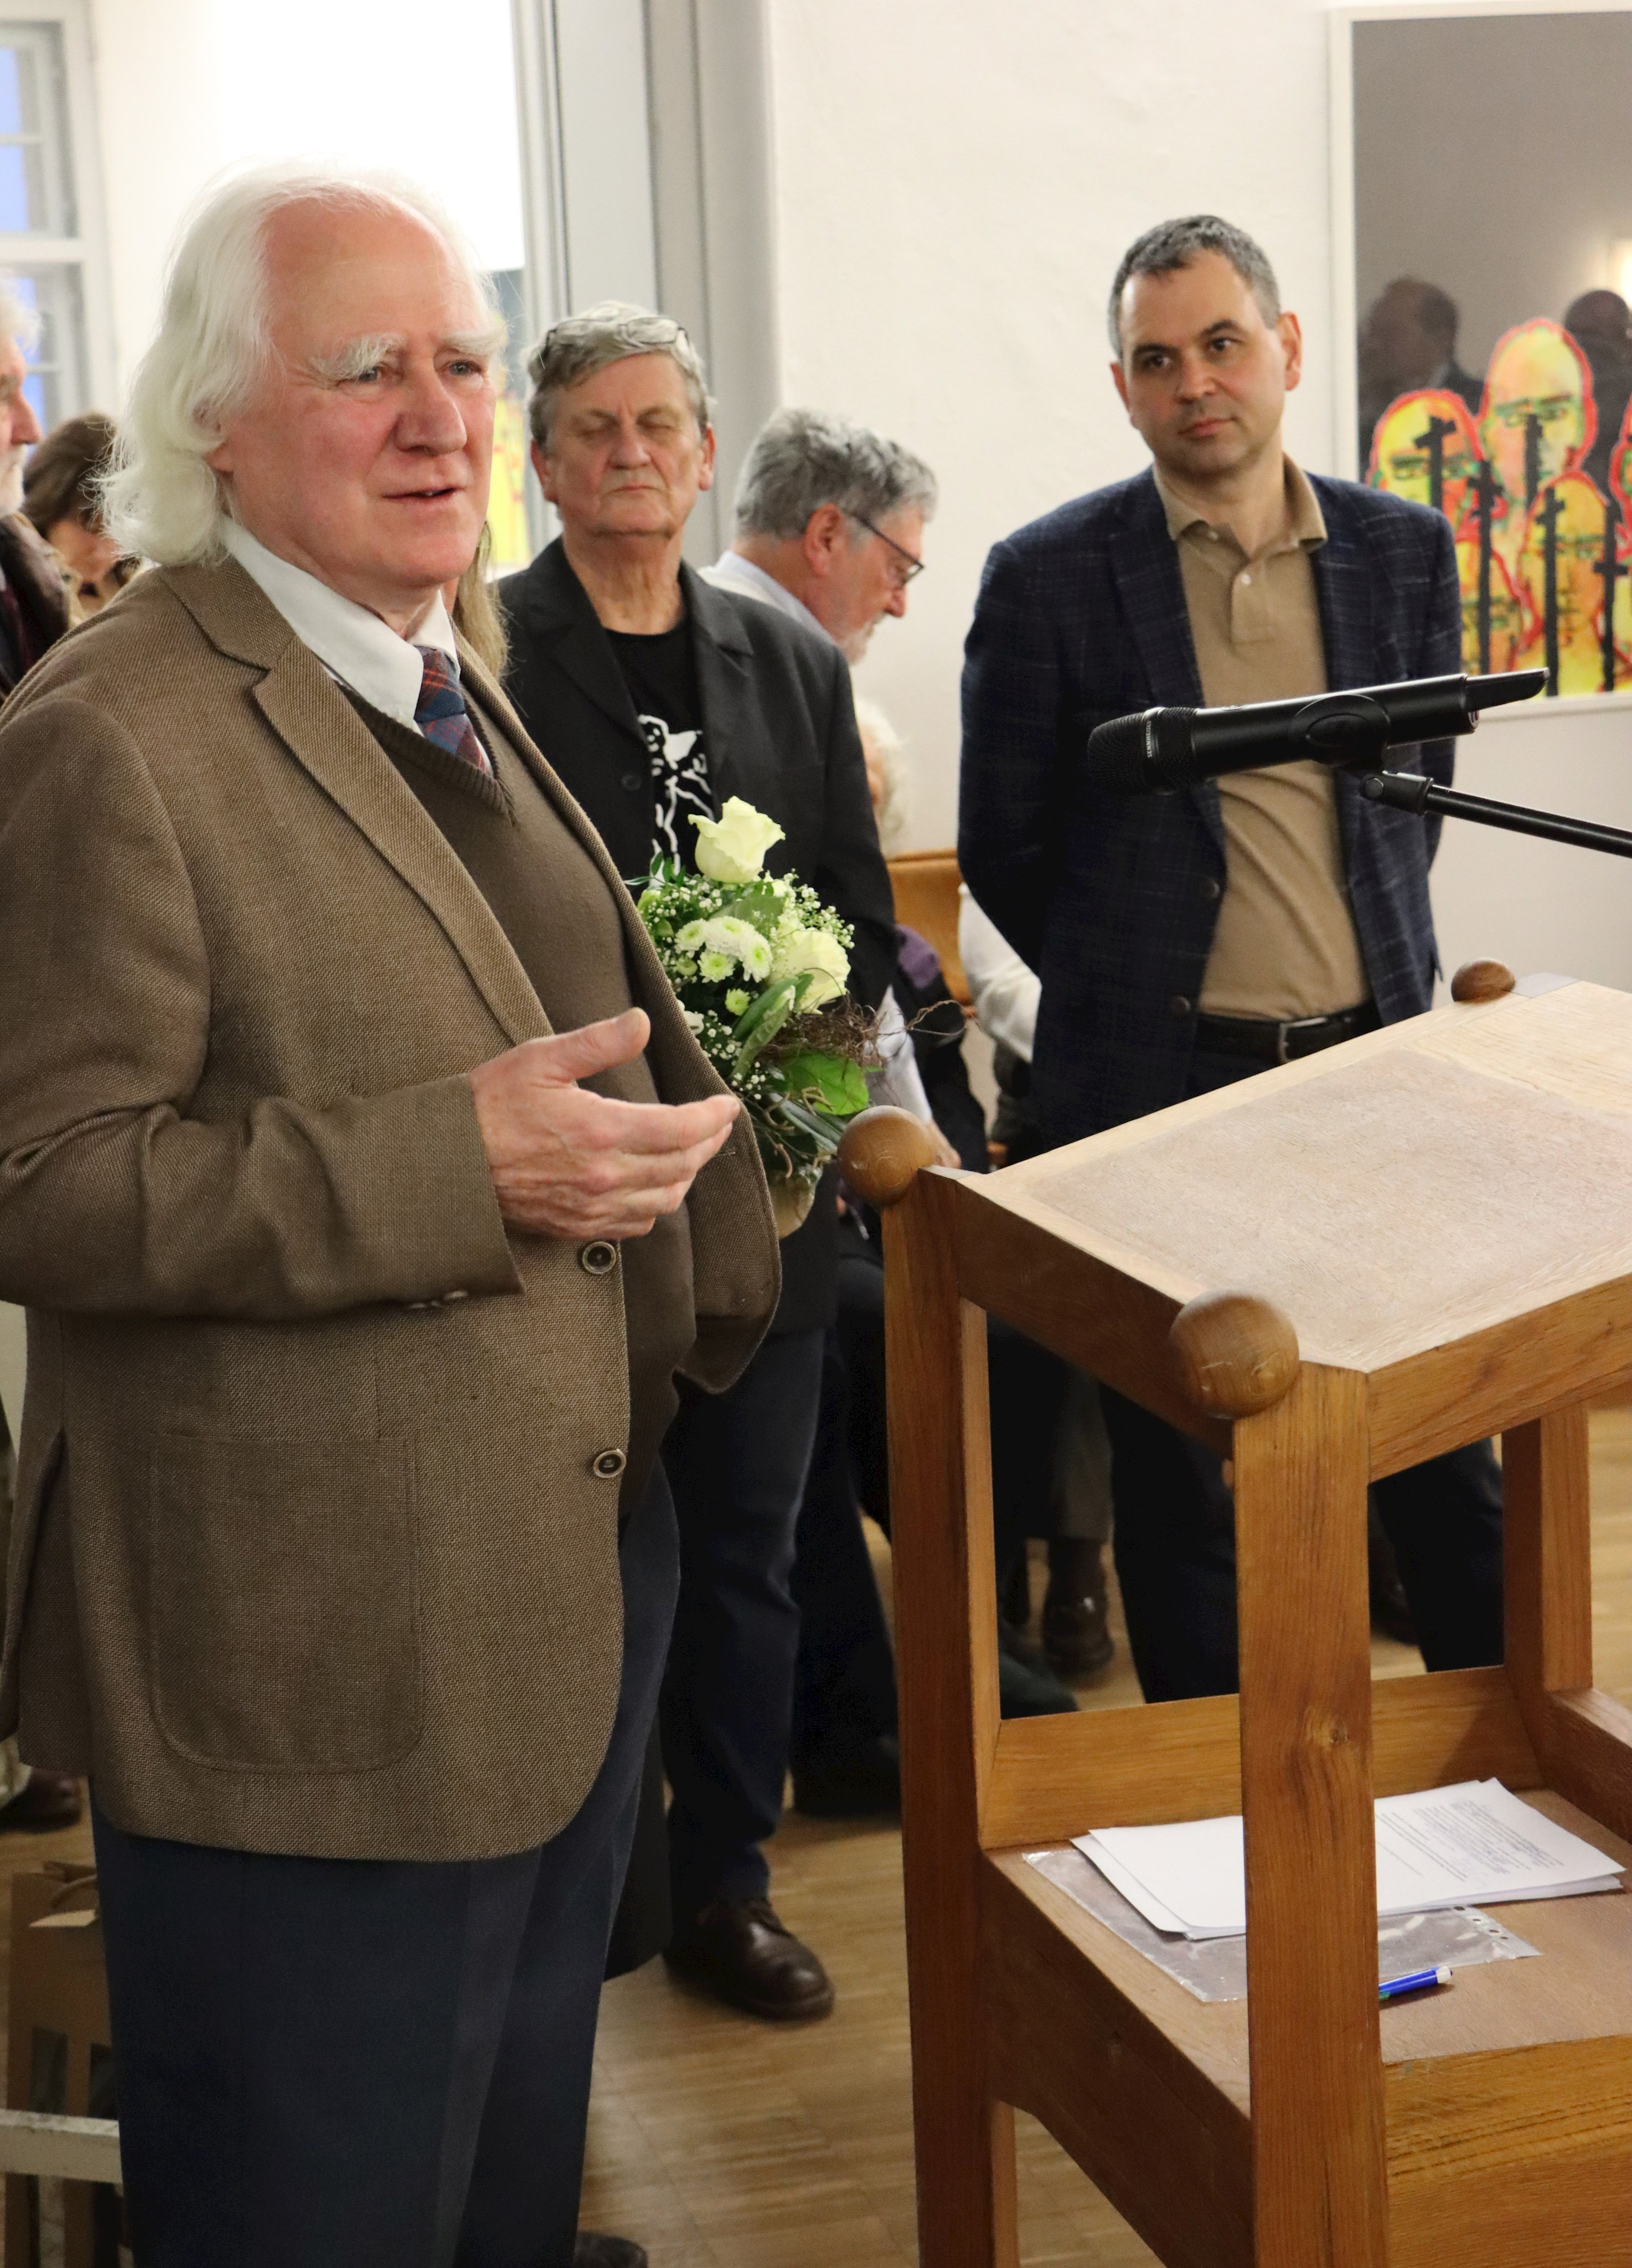 Künstler Mark Angus (l.) bei der Vernissage in der Landkreisgalerie auf Schloss Neuburg zusammen mit Landrat Raimund Kneidinger (r.).